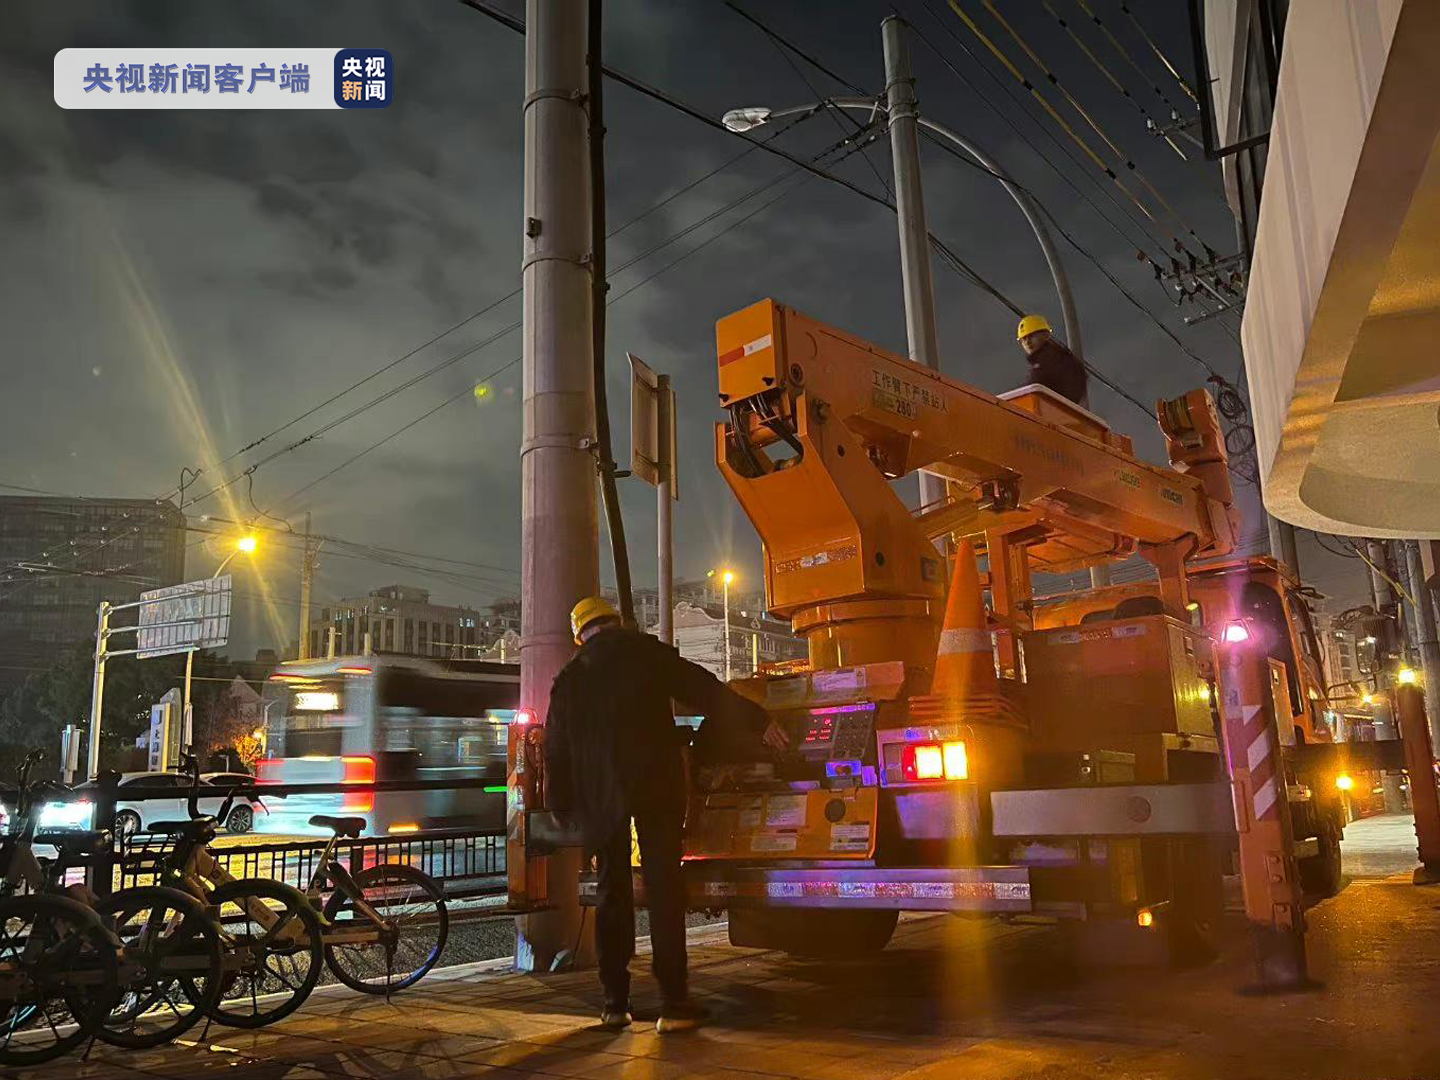 上海一10千伏电力设备突发故障 部分小区停电